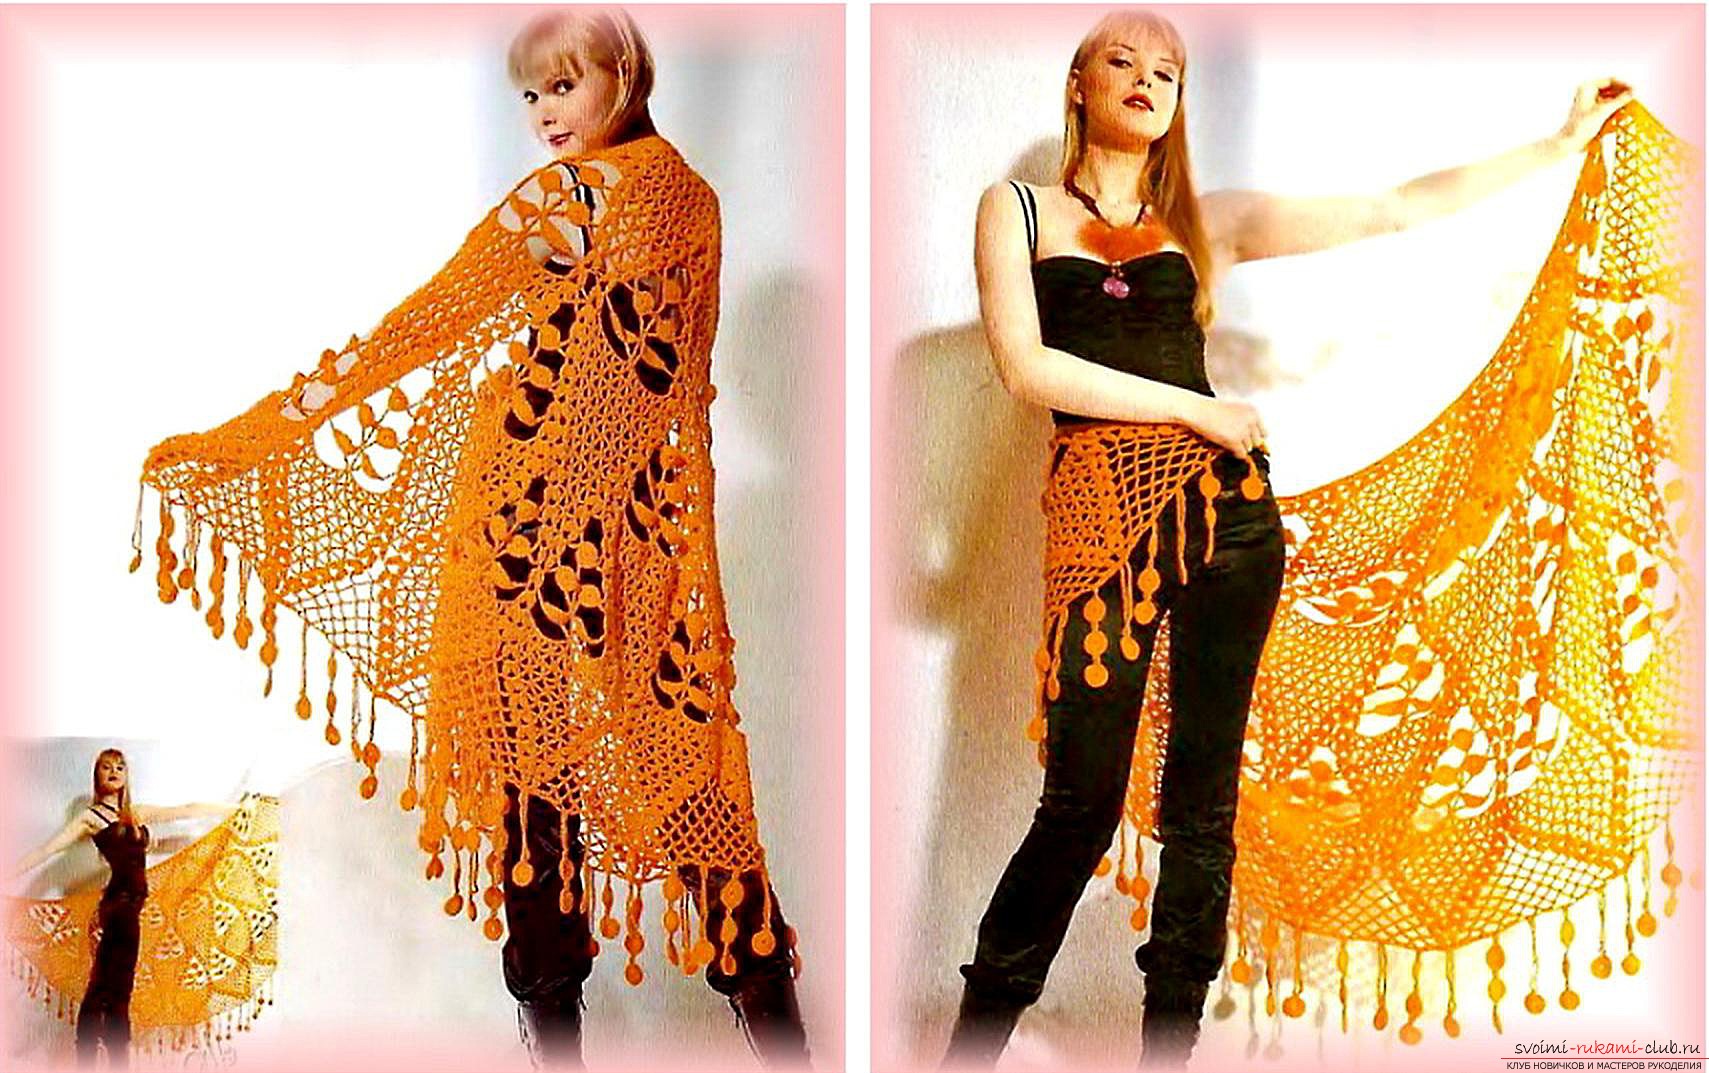 crocheted beautiful woman shawl. Photo №1